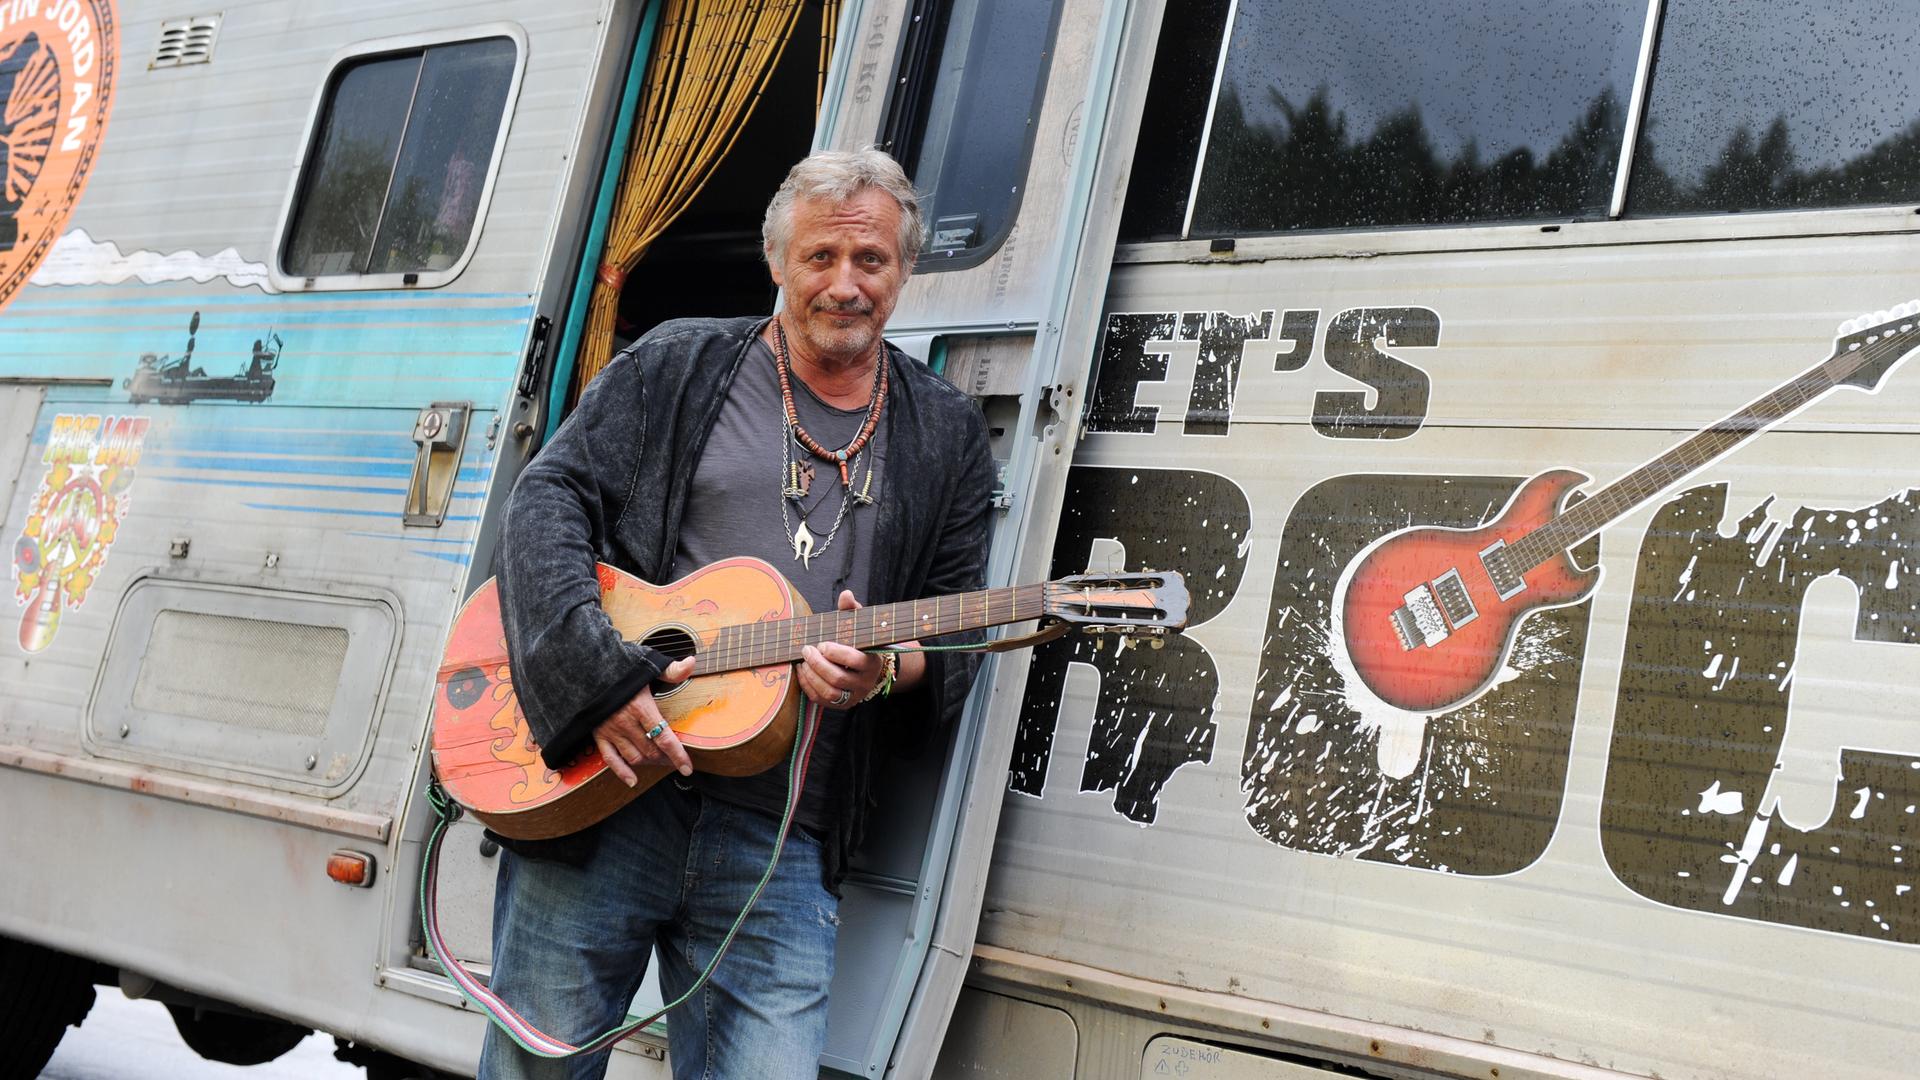 Ein Mann lehnt mit seiner Gitarre im Arm an einem Wohnwagen und lächelt in die Kamera. Es ist der Musiker Konstantin Wecker. 